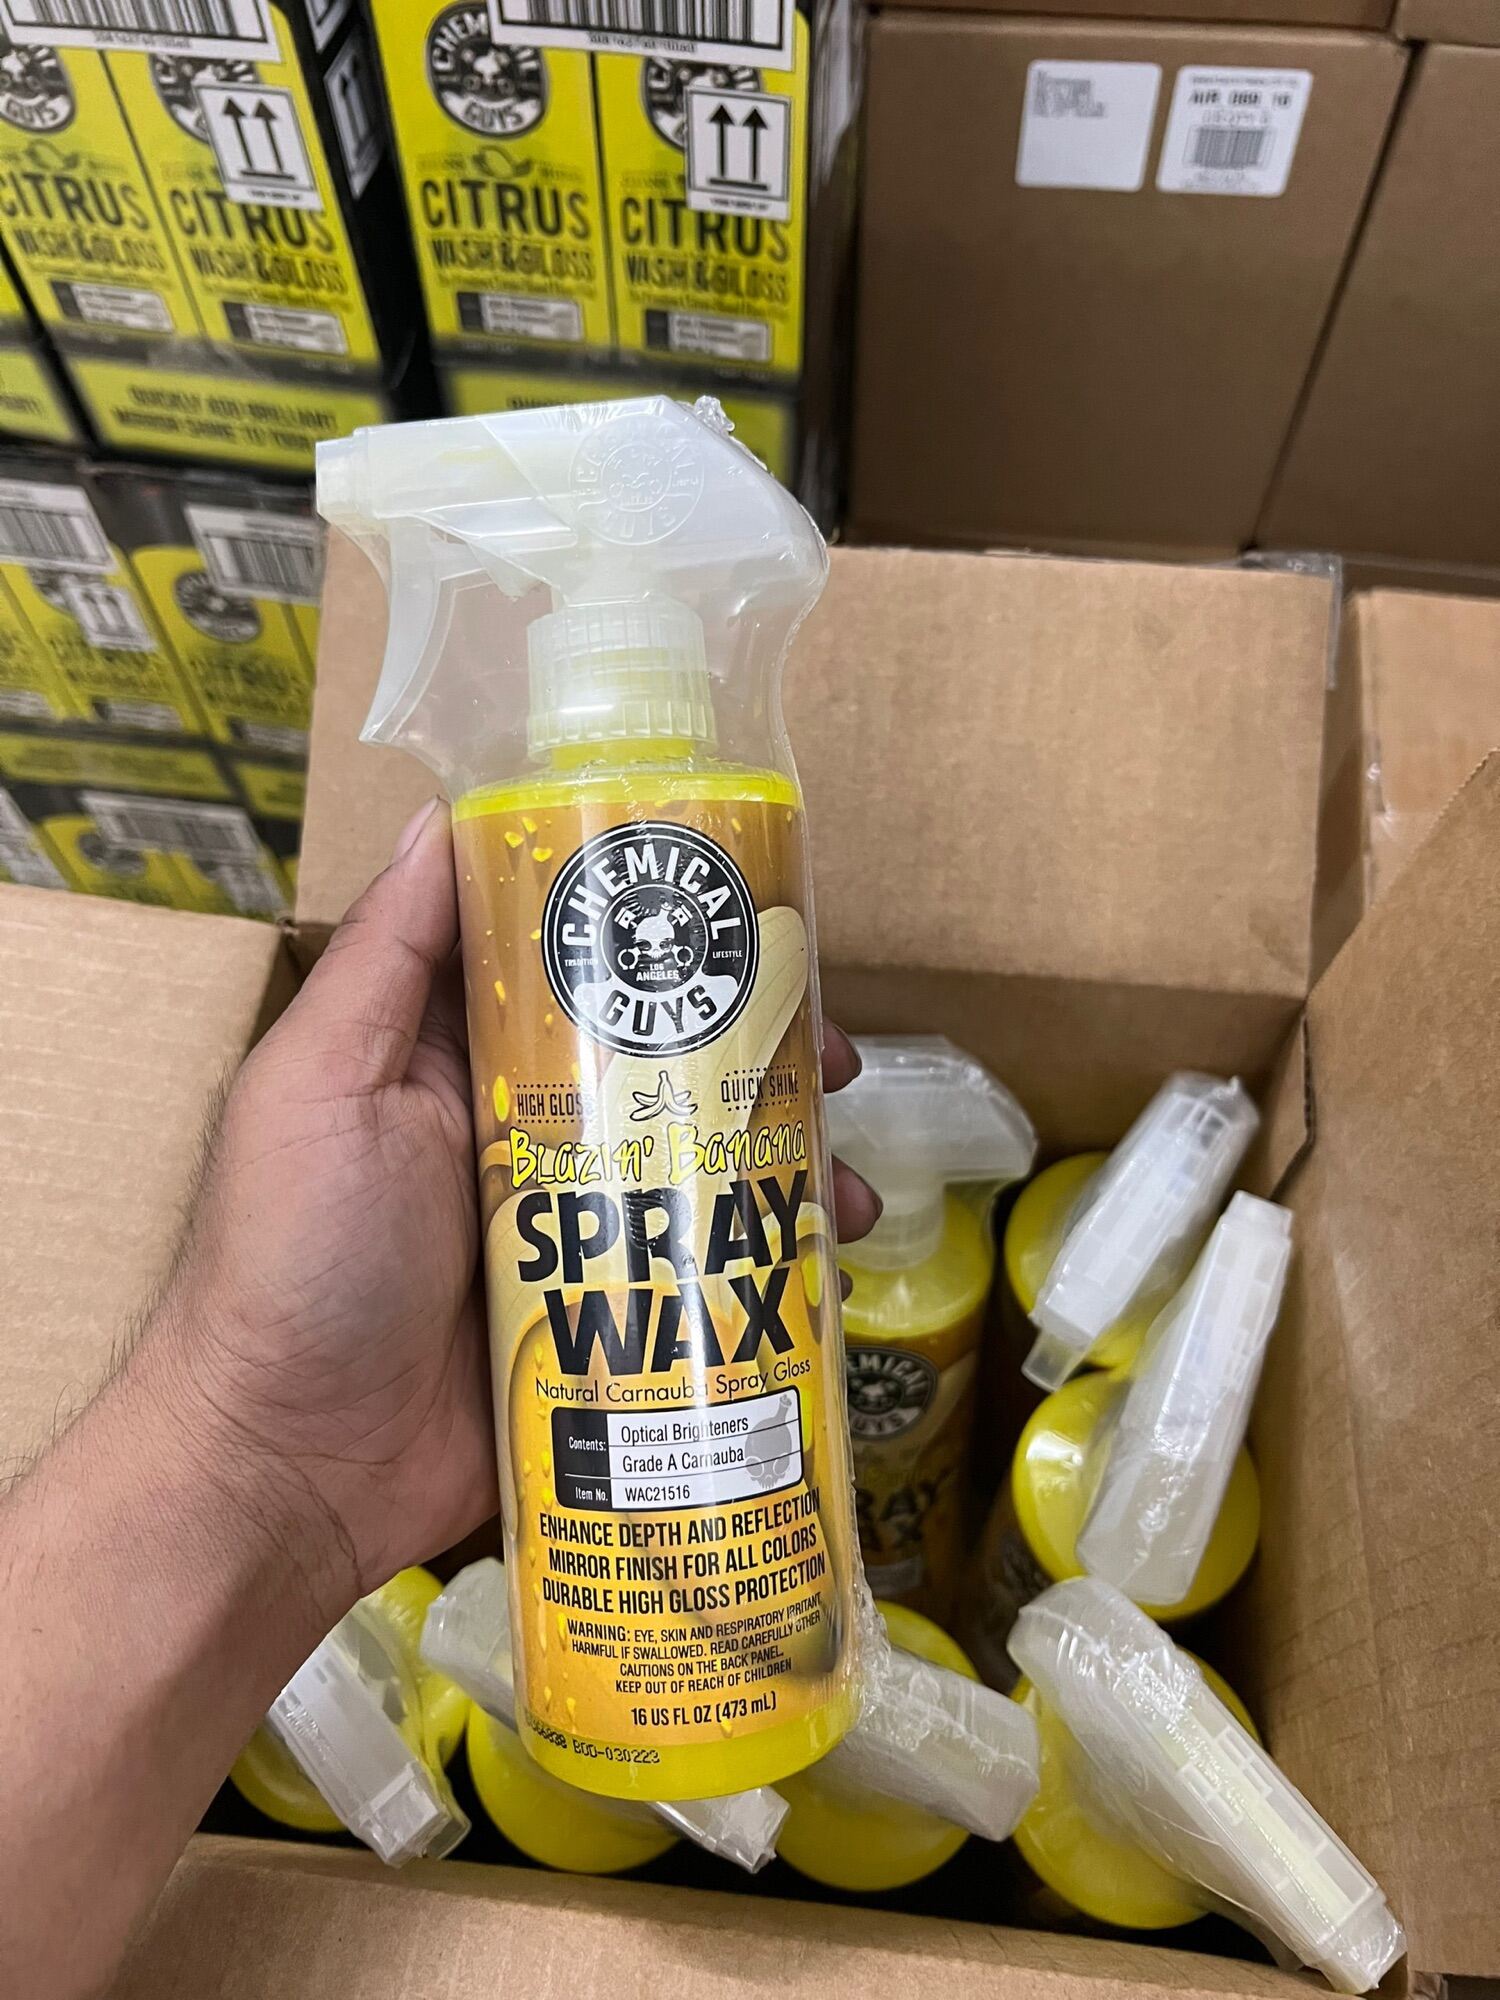 NEW Spray Wax Xịt Tăng Bóng Hương Chuối Chemical Guys